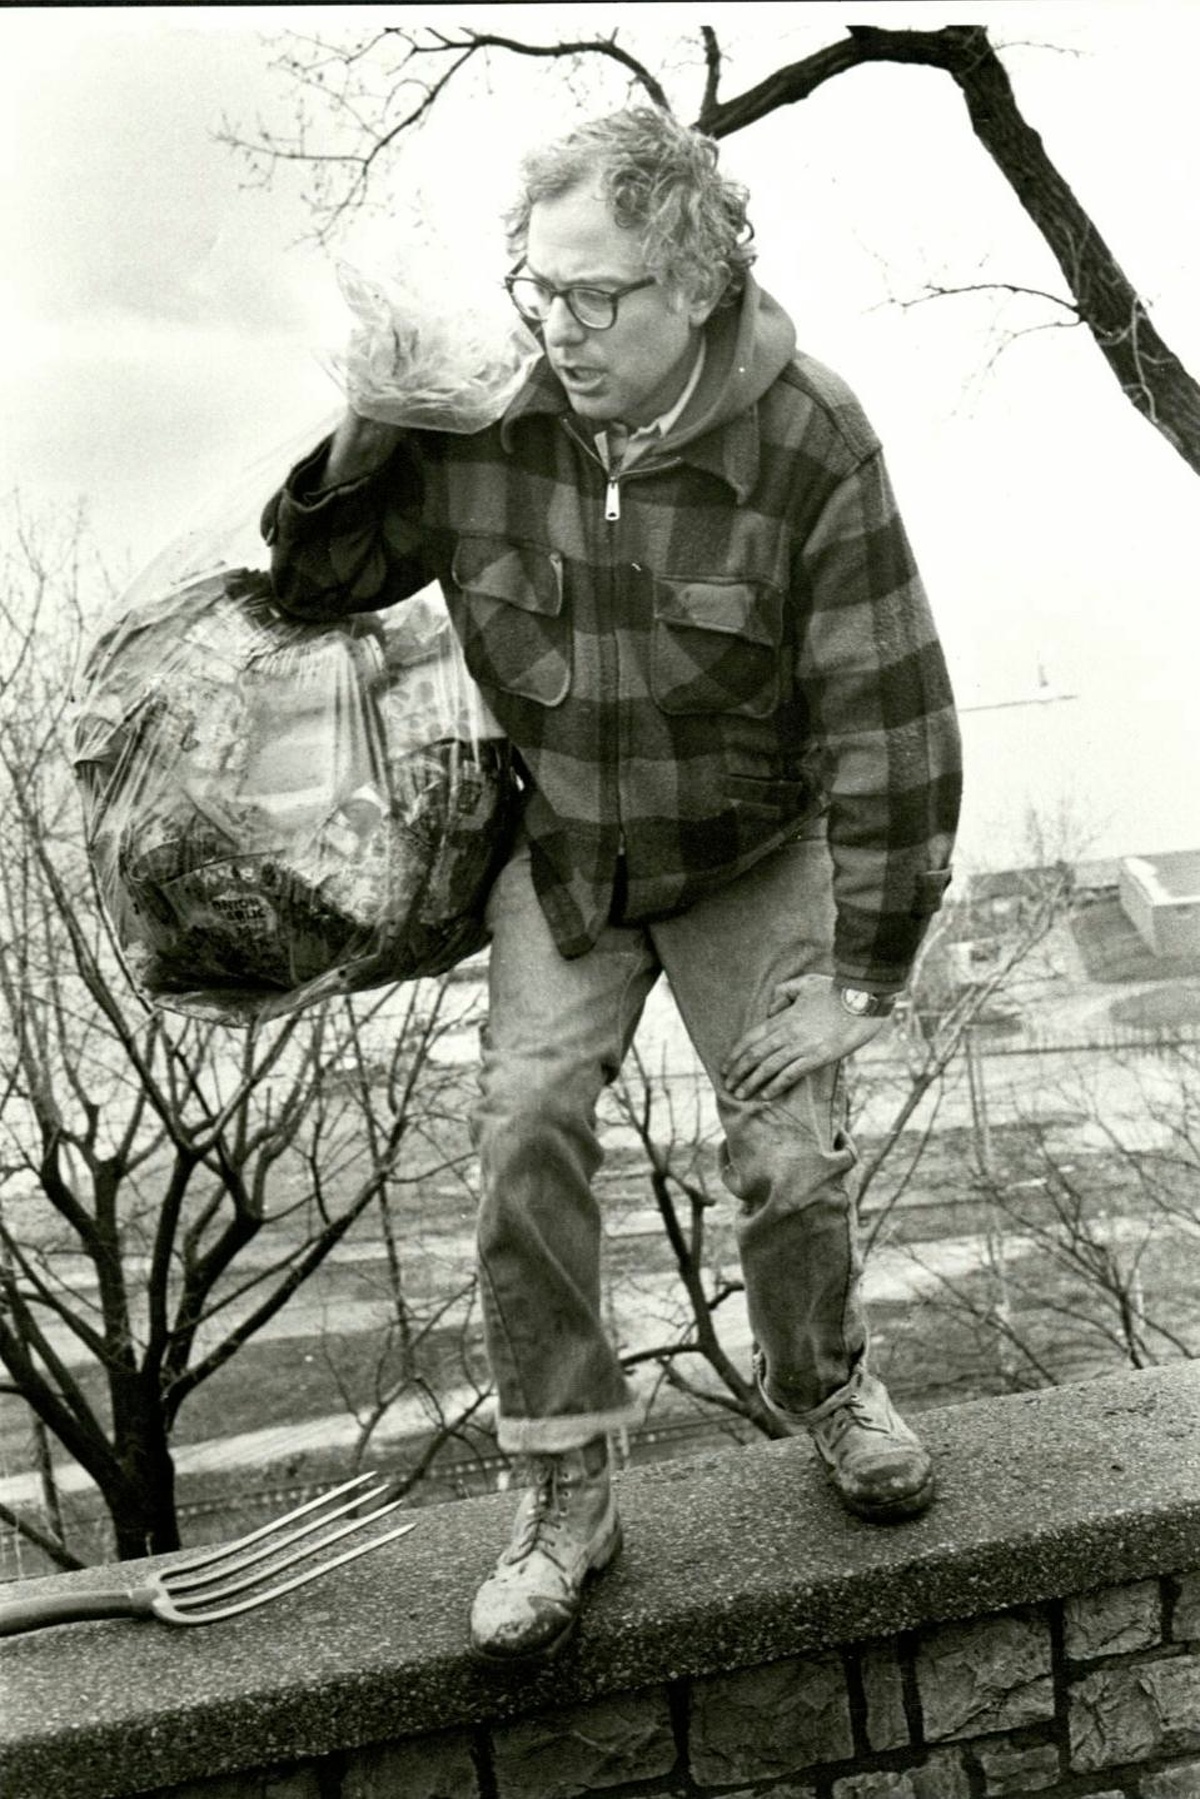 Bernie+Sanders+picking+up+trash+at+Burlington+Park+after+being+elected+Mayor+in+1981